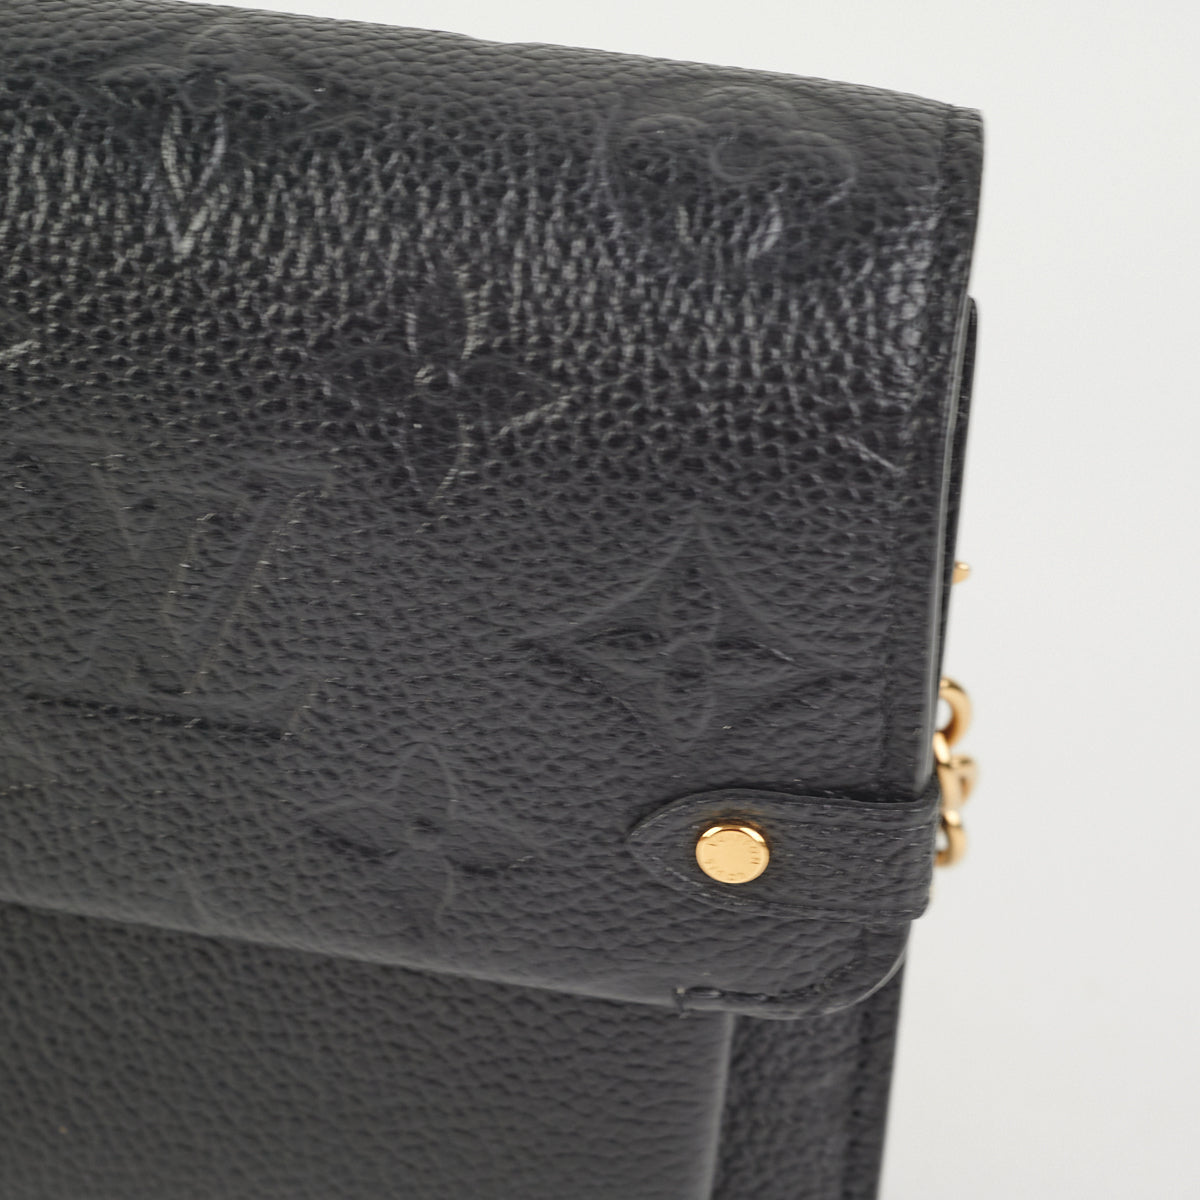 Shop Louis Vuitton Vavin chain wallet (PORTEFEUILLE CHAINE VAVIN, M67839, VAVIN  CHAIN WALLET, M69423) by Mikrie